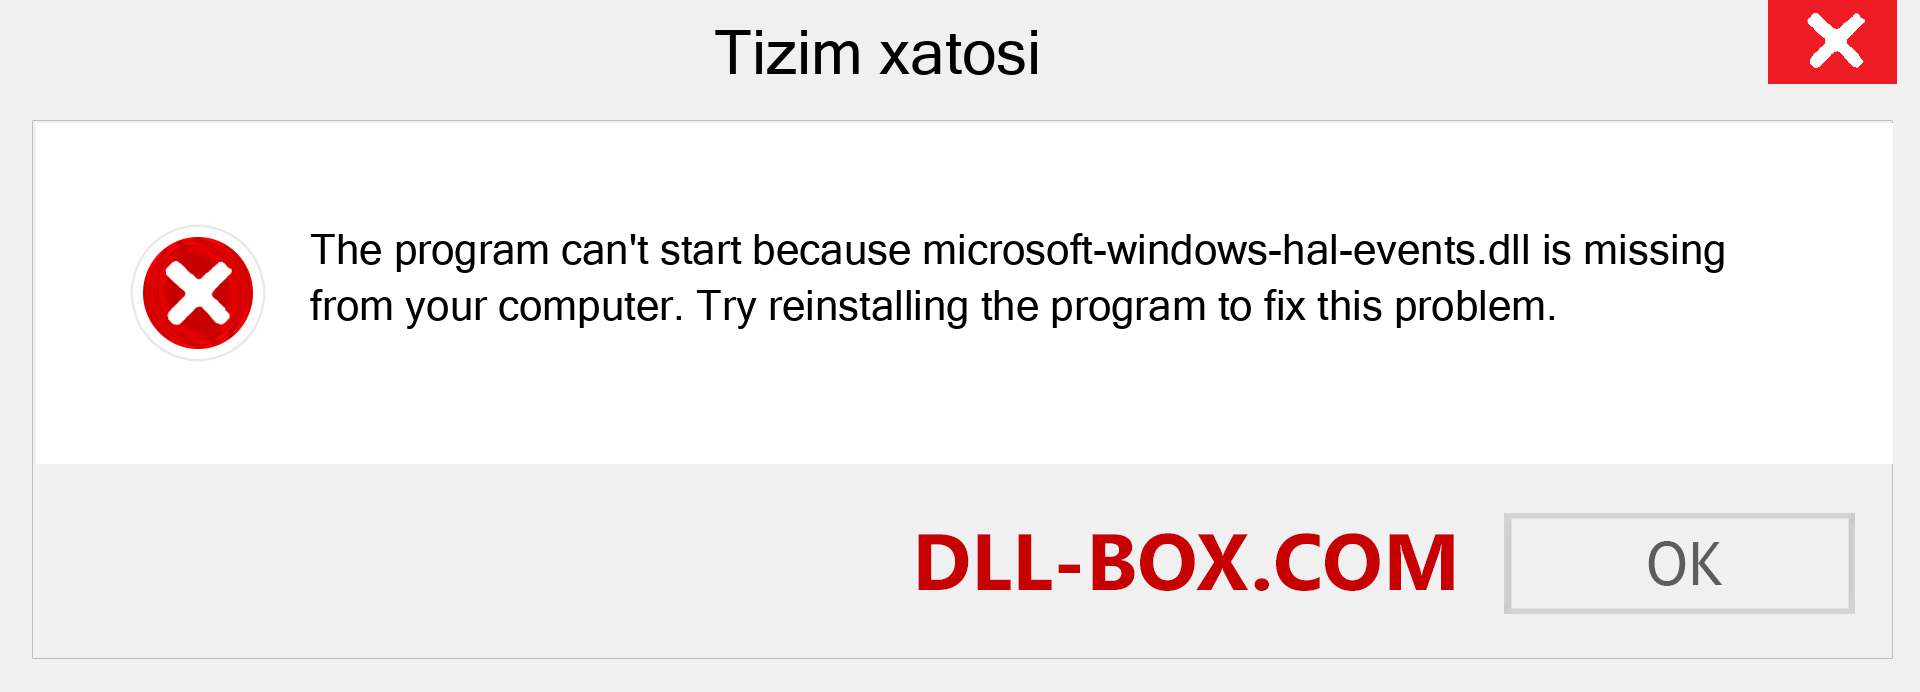 microsoft-windows-hal-events.dll fayli yo'qolganmi?. Windows 7, 8, 10 uchun yuklab olish - Windowsda microsoft-windows-hal-events dll etishmayotgan xatoni tuzating, rasmlar, rasmlar